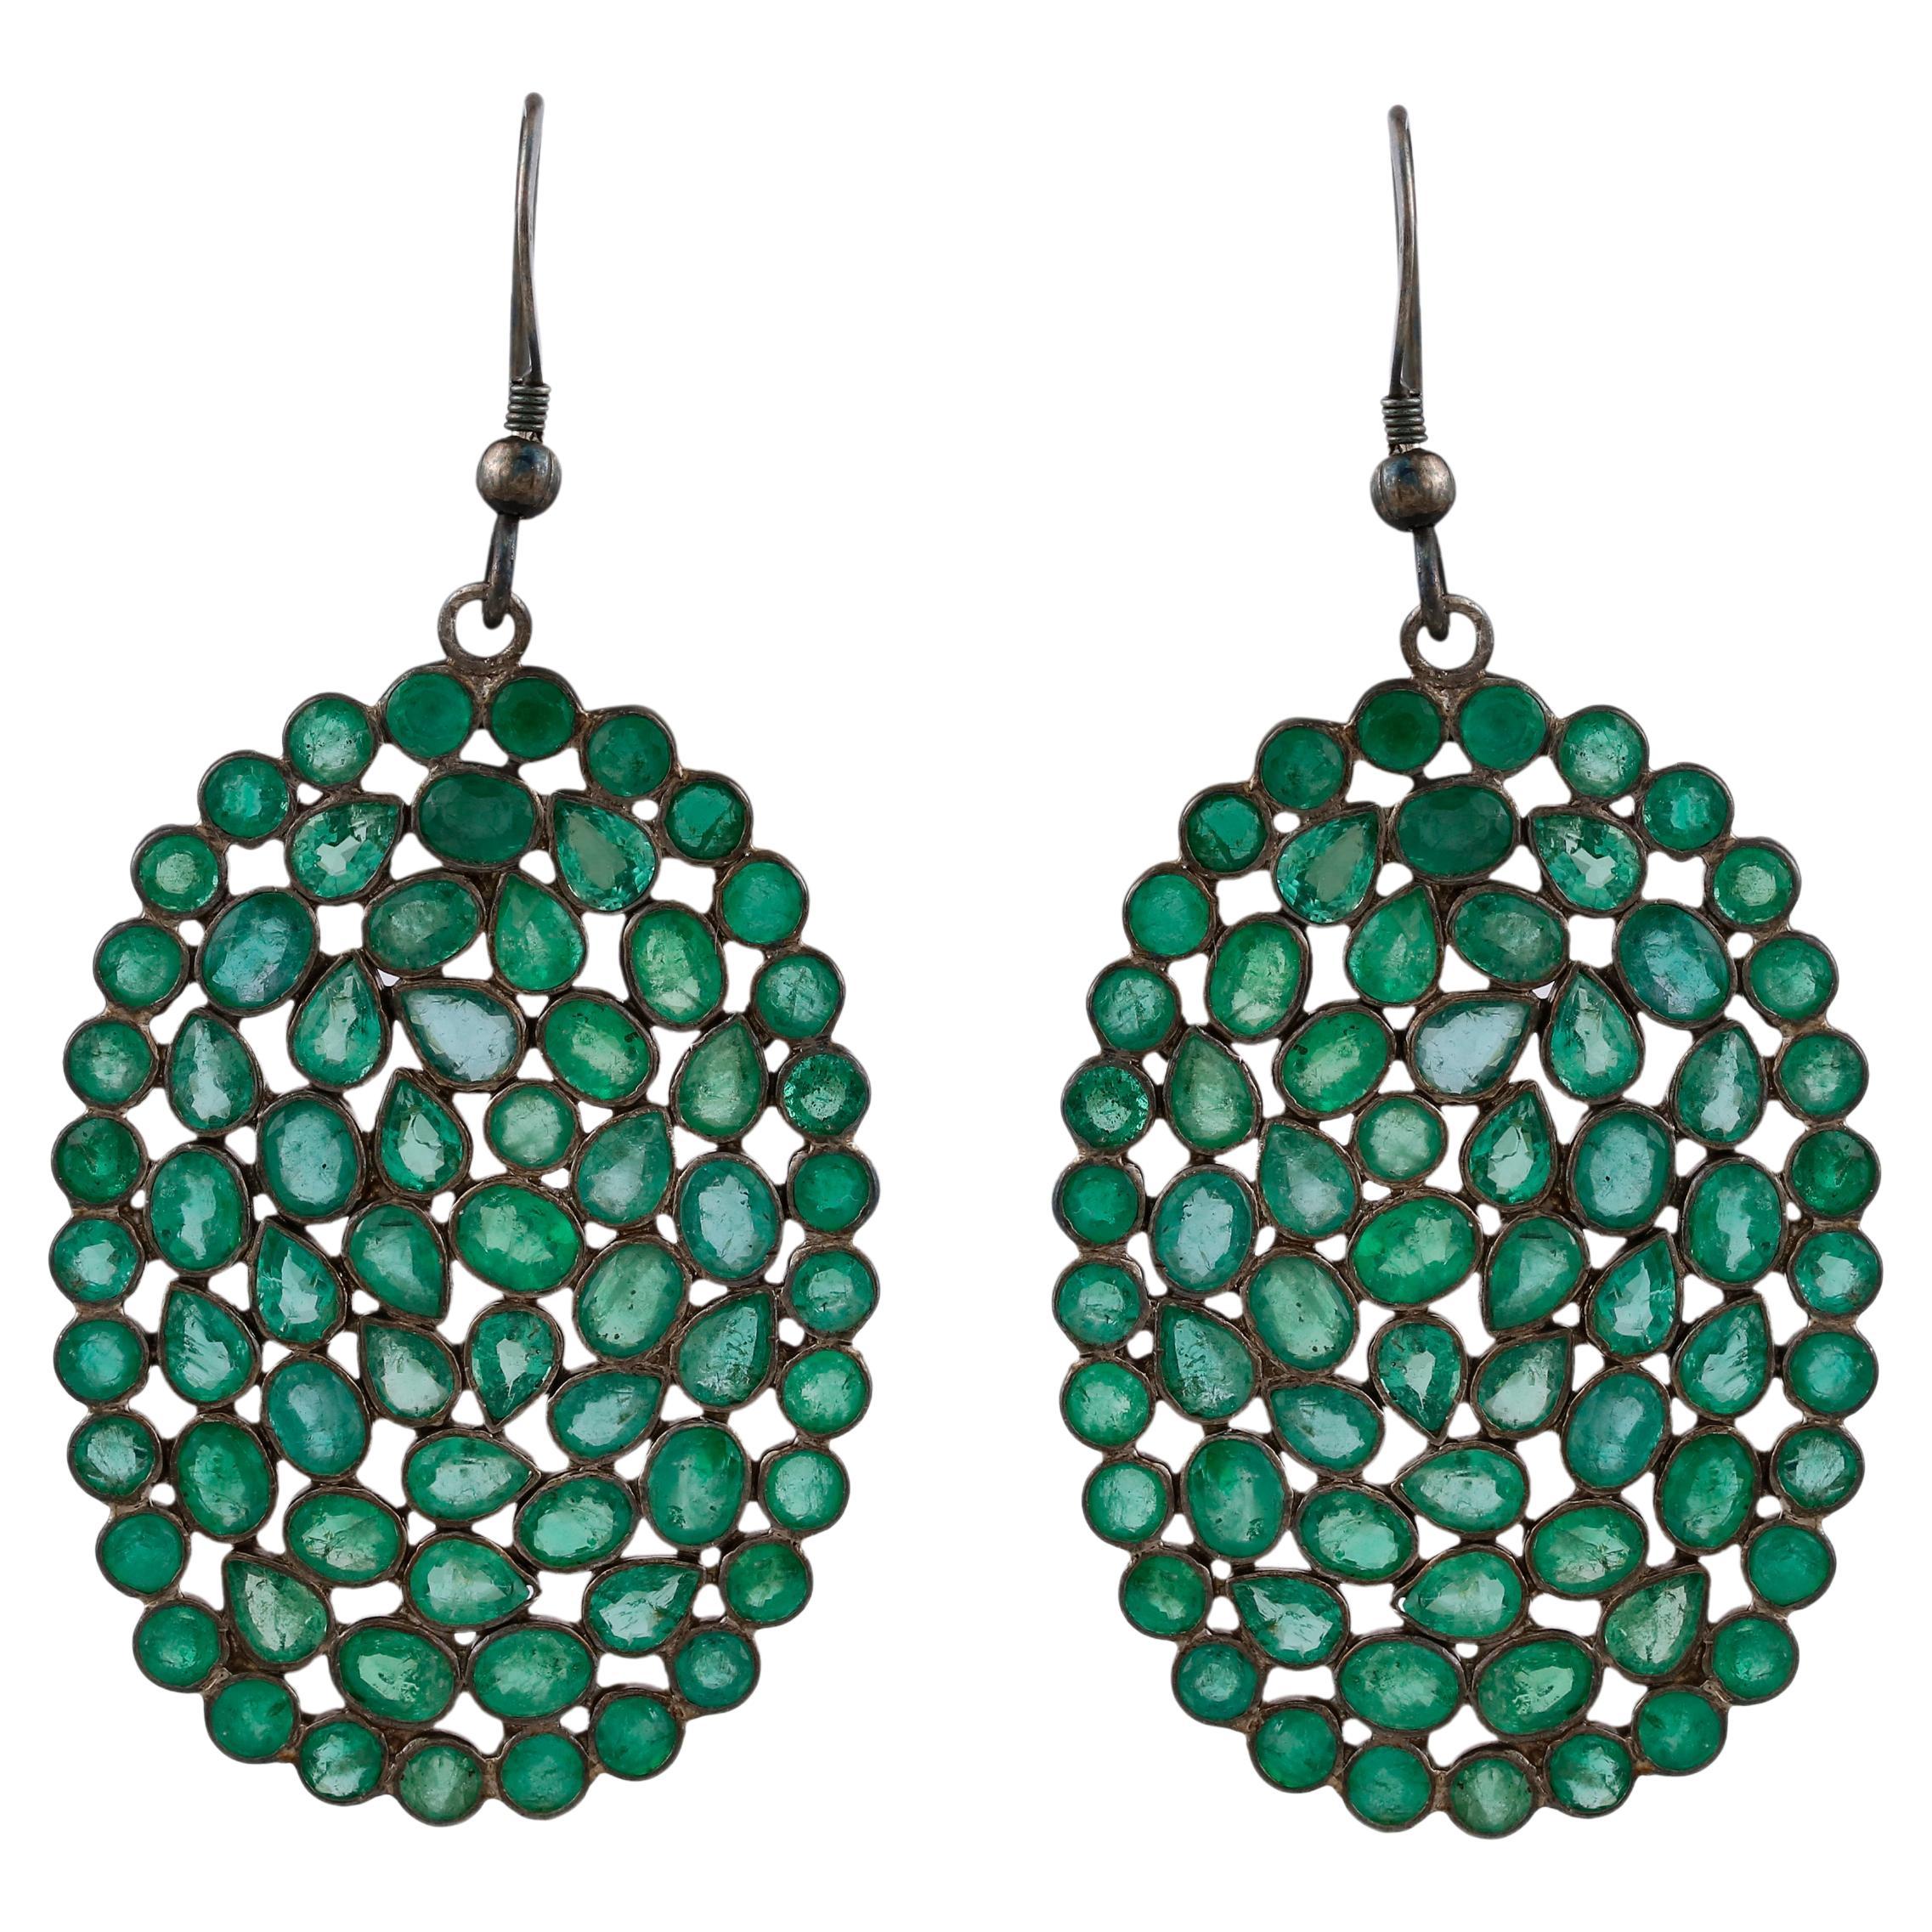 Victorian 15.8cttw. Emerald Dangle Earrings in 925 Sterling Silver